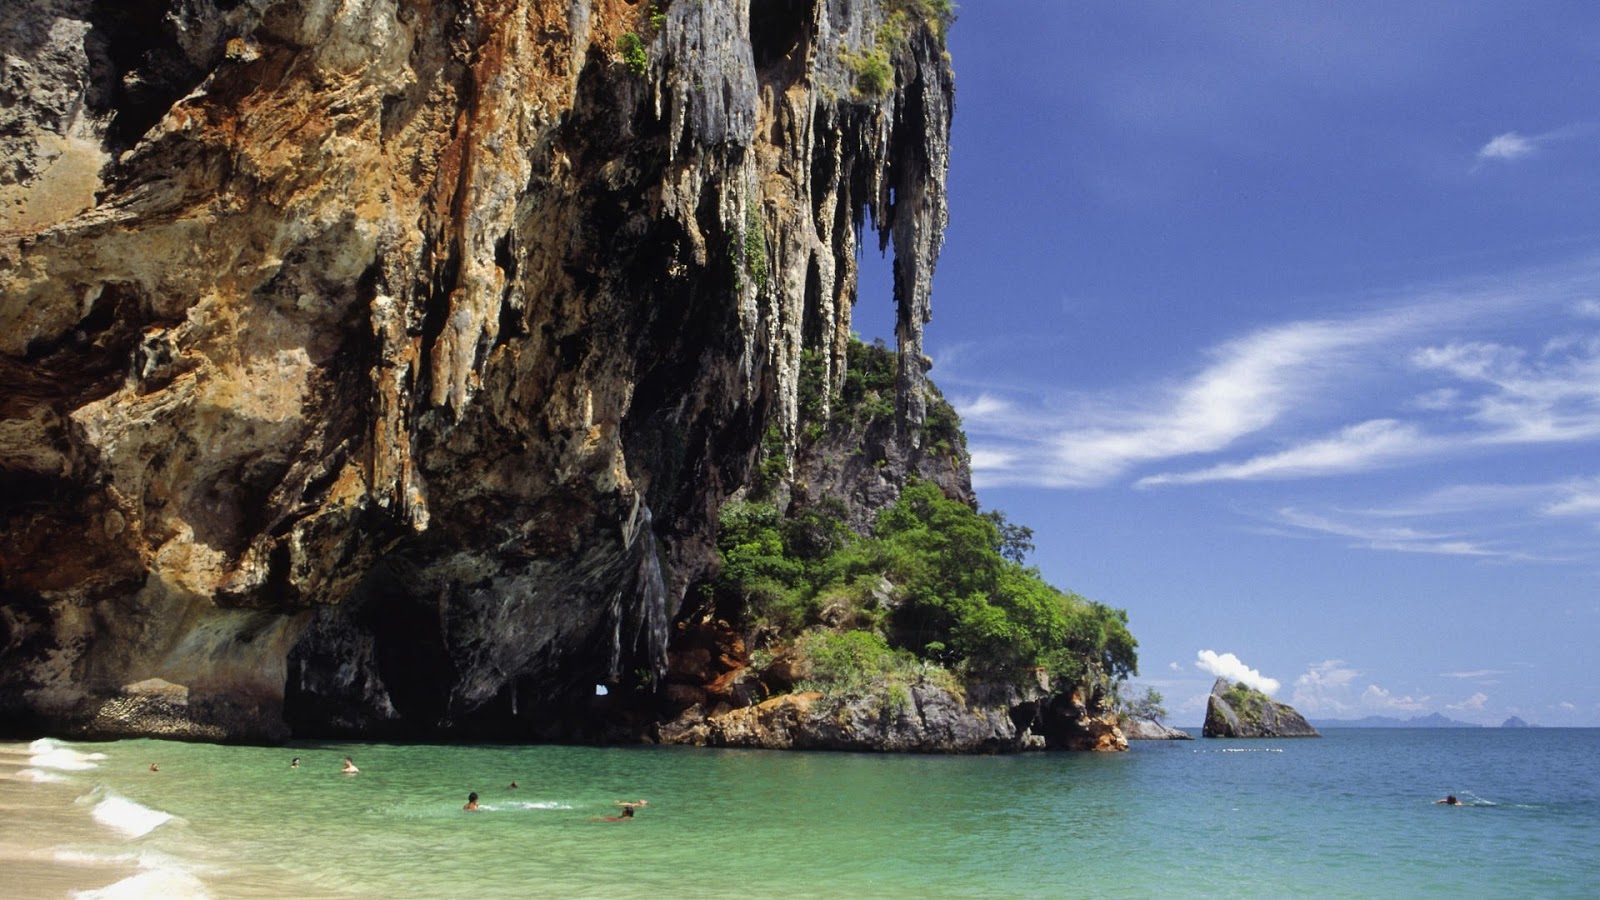 Thailand Beach HD Wallpaper 1080p Ultra